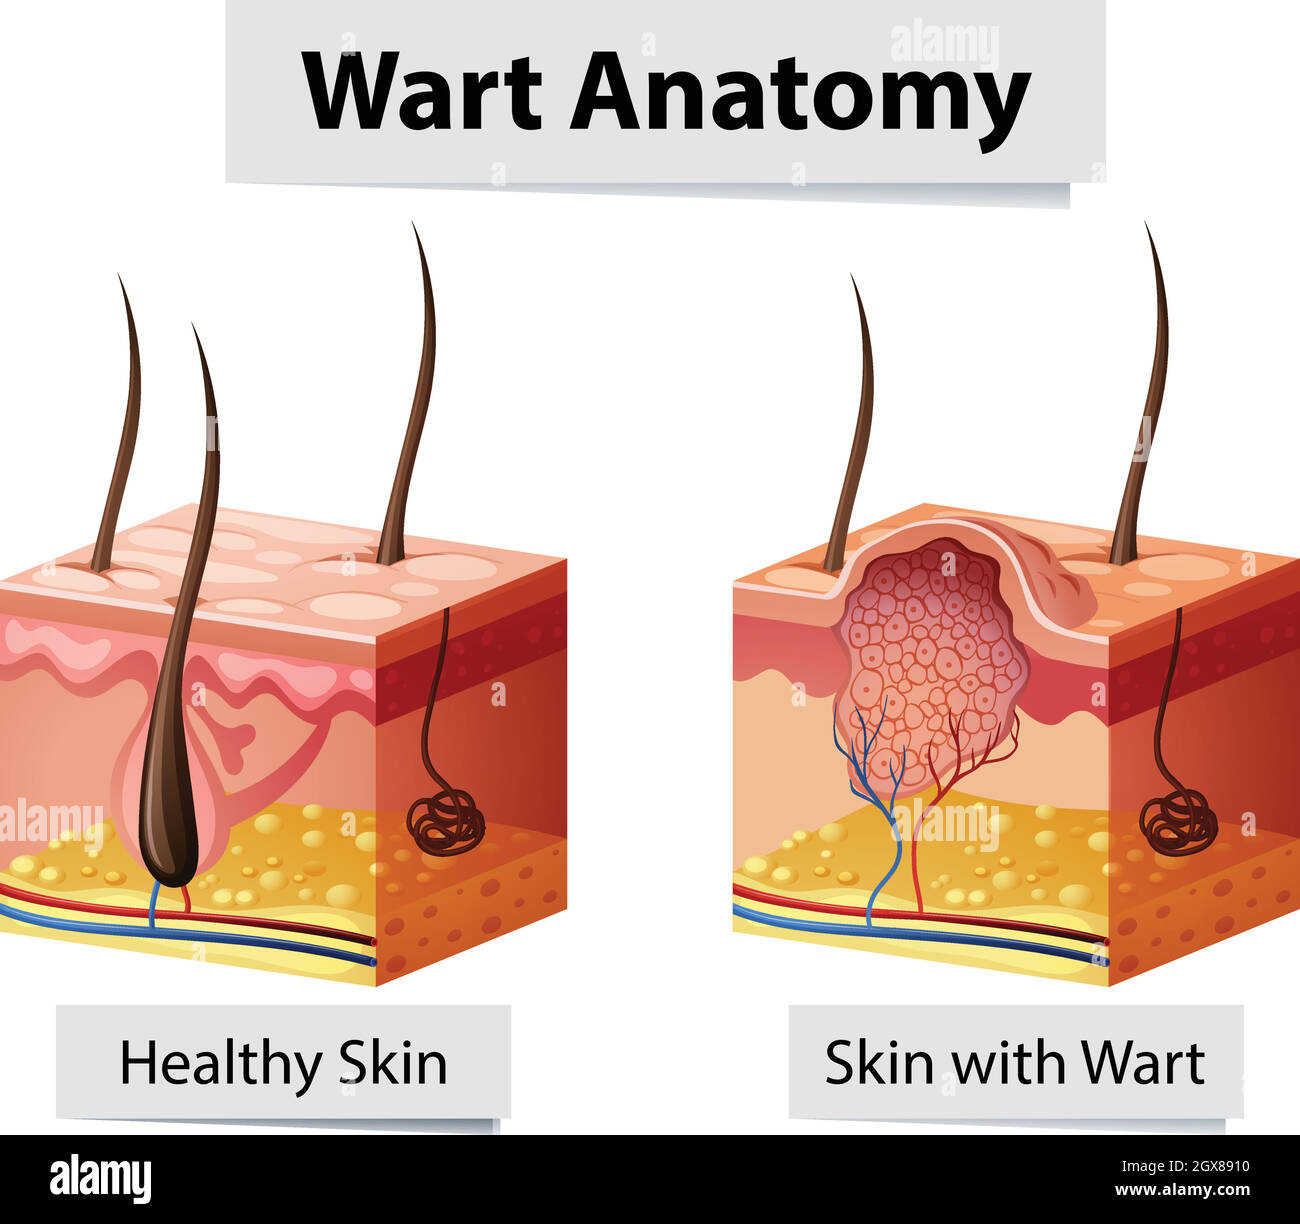 Wart Human Skin Anatomy Illustration Stock Vector